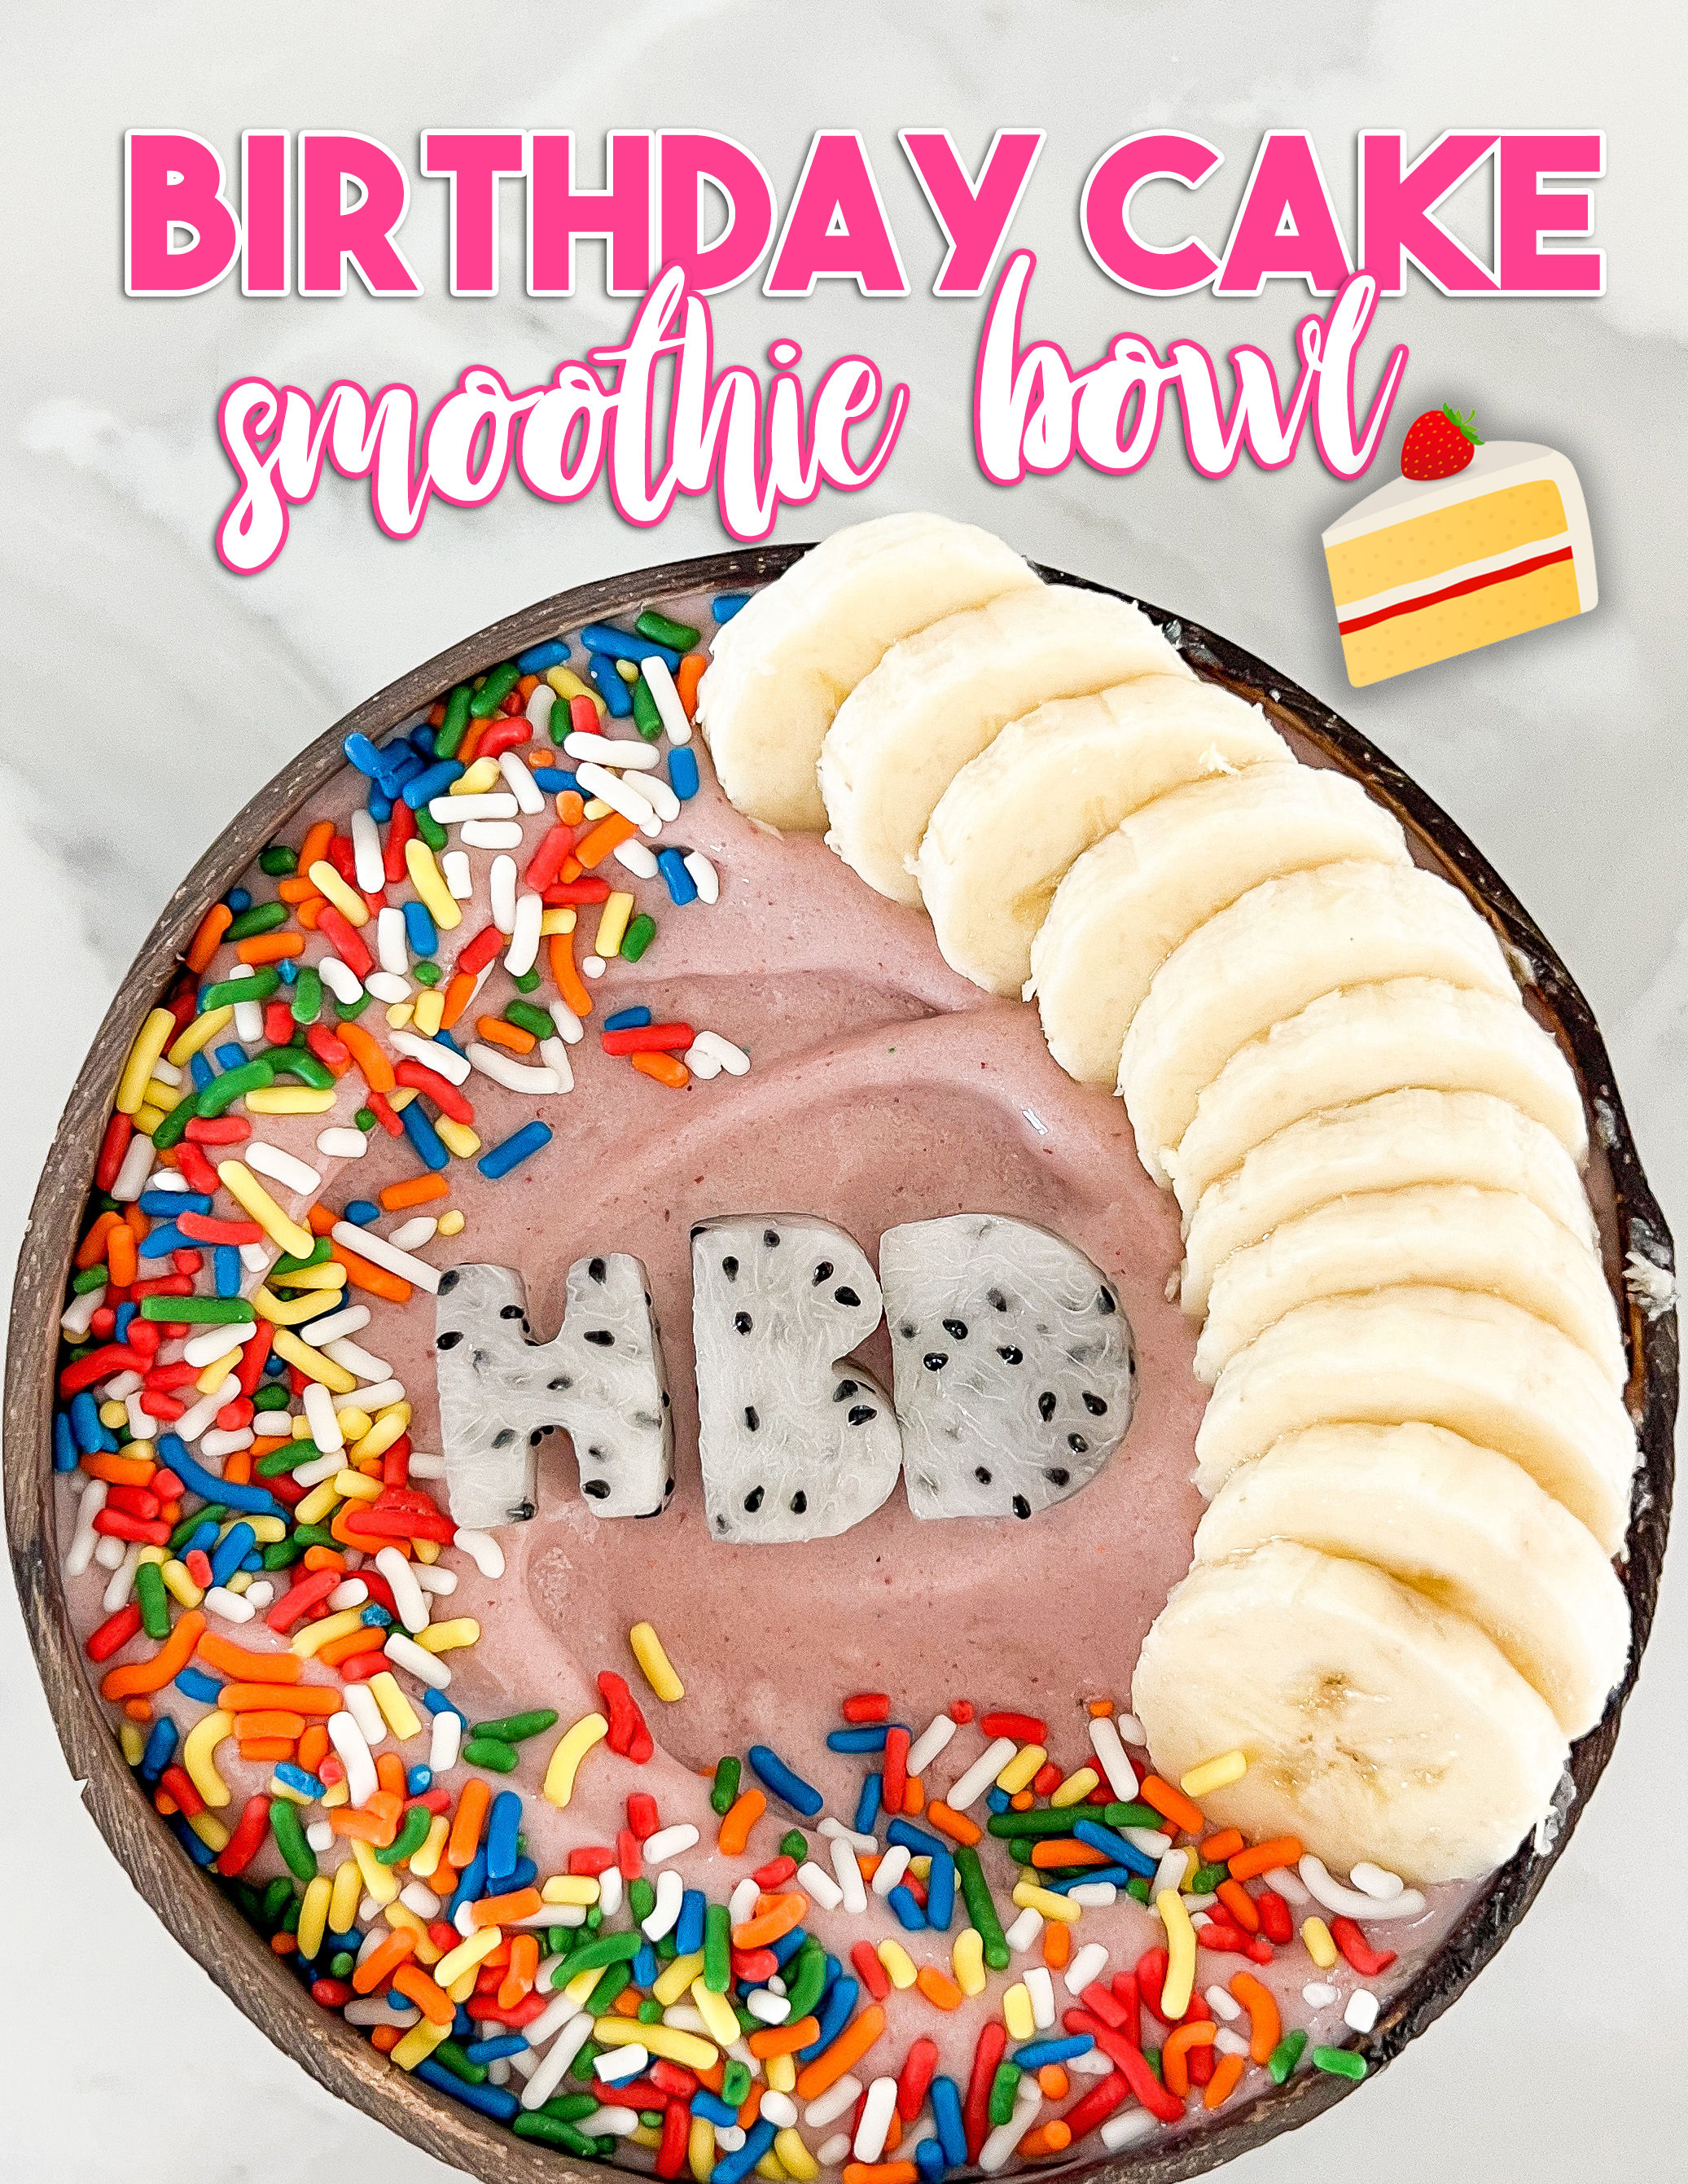 Birthday Cake Smoothie Bowl Recipe